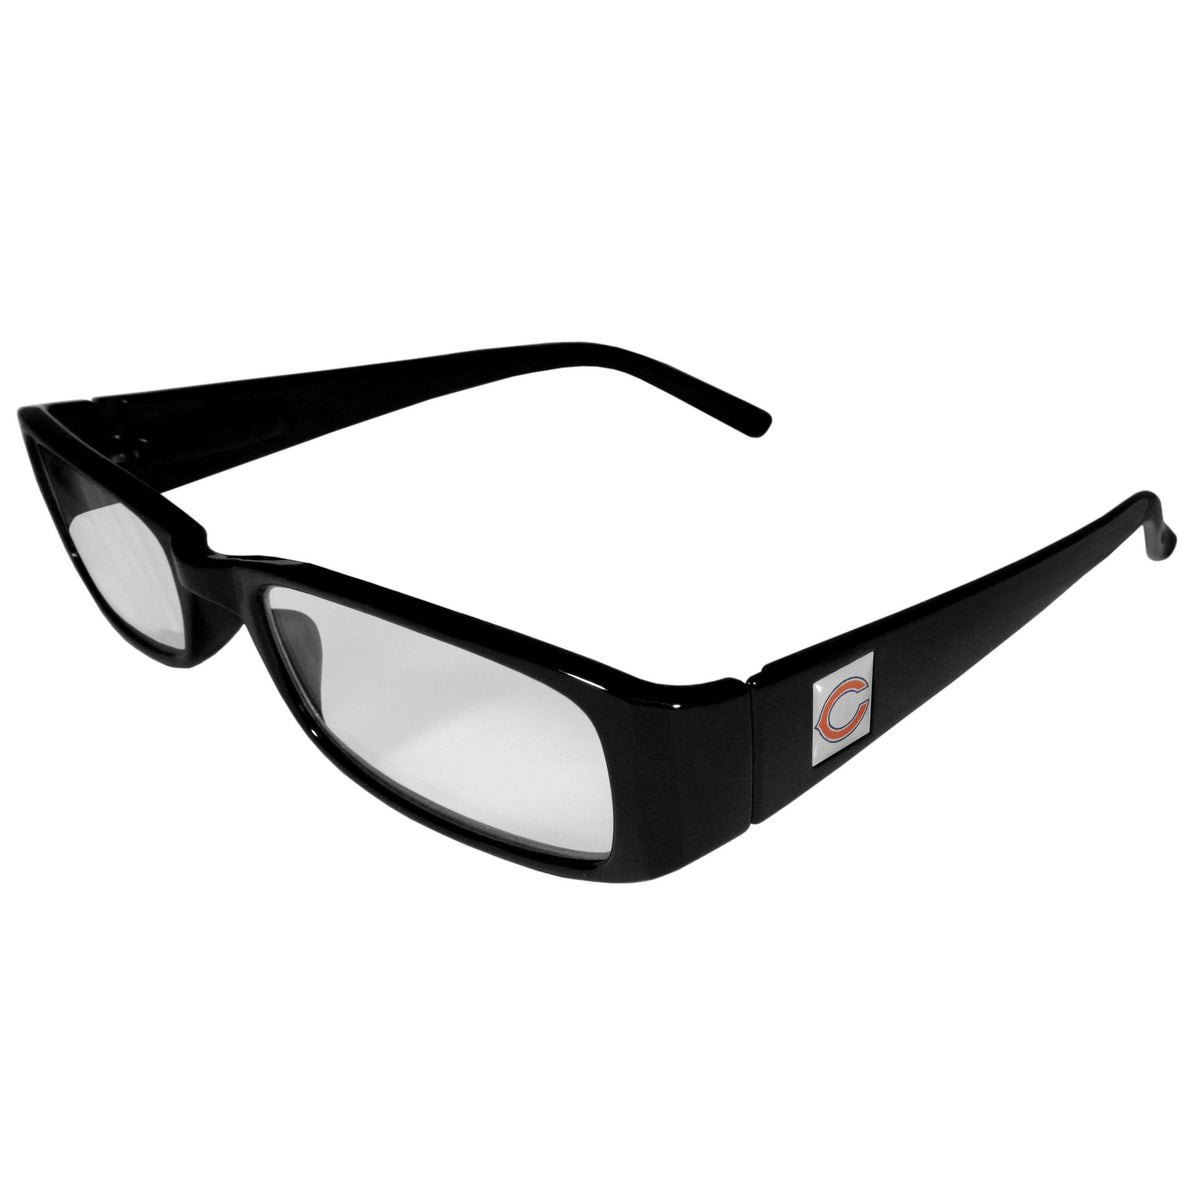 Chicago Bears Black Reading Glasses +1.75 - Flyclothing LLC